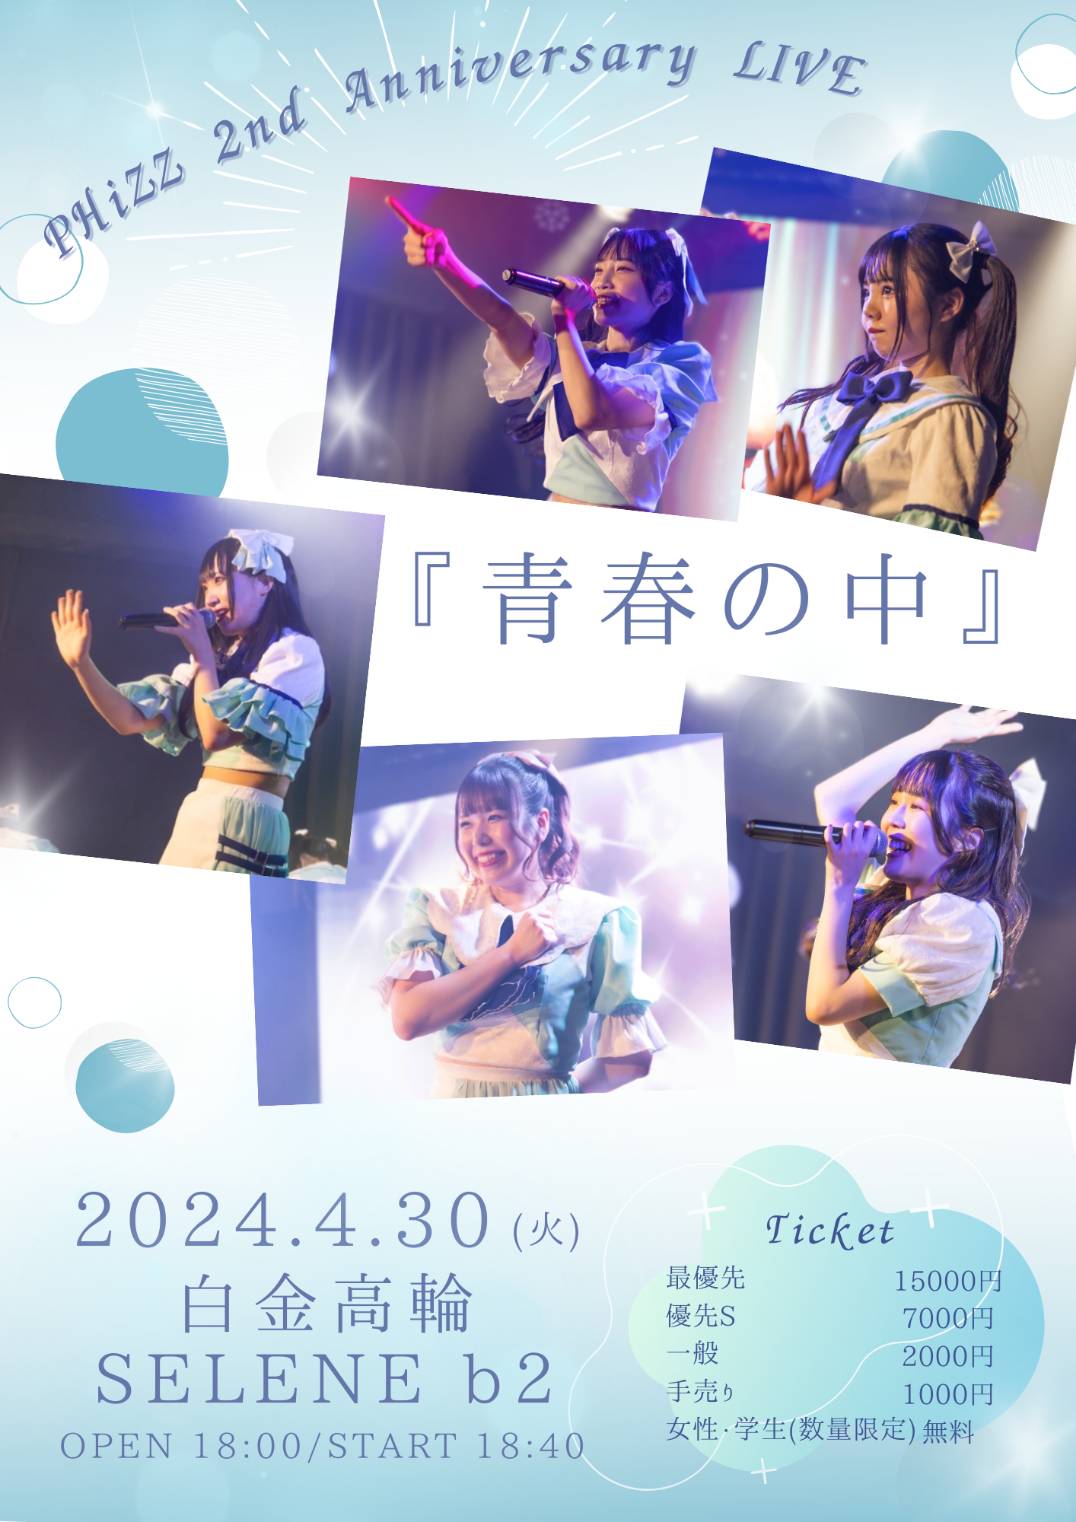 2nd Anniversary LIVE 『青春の中』